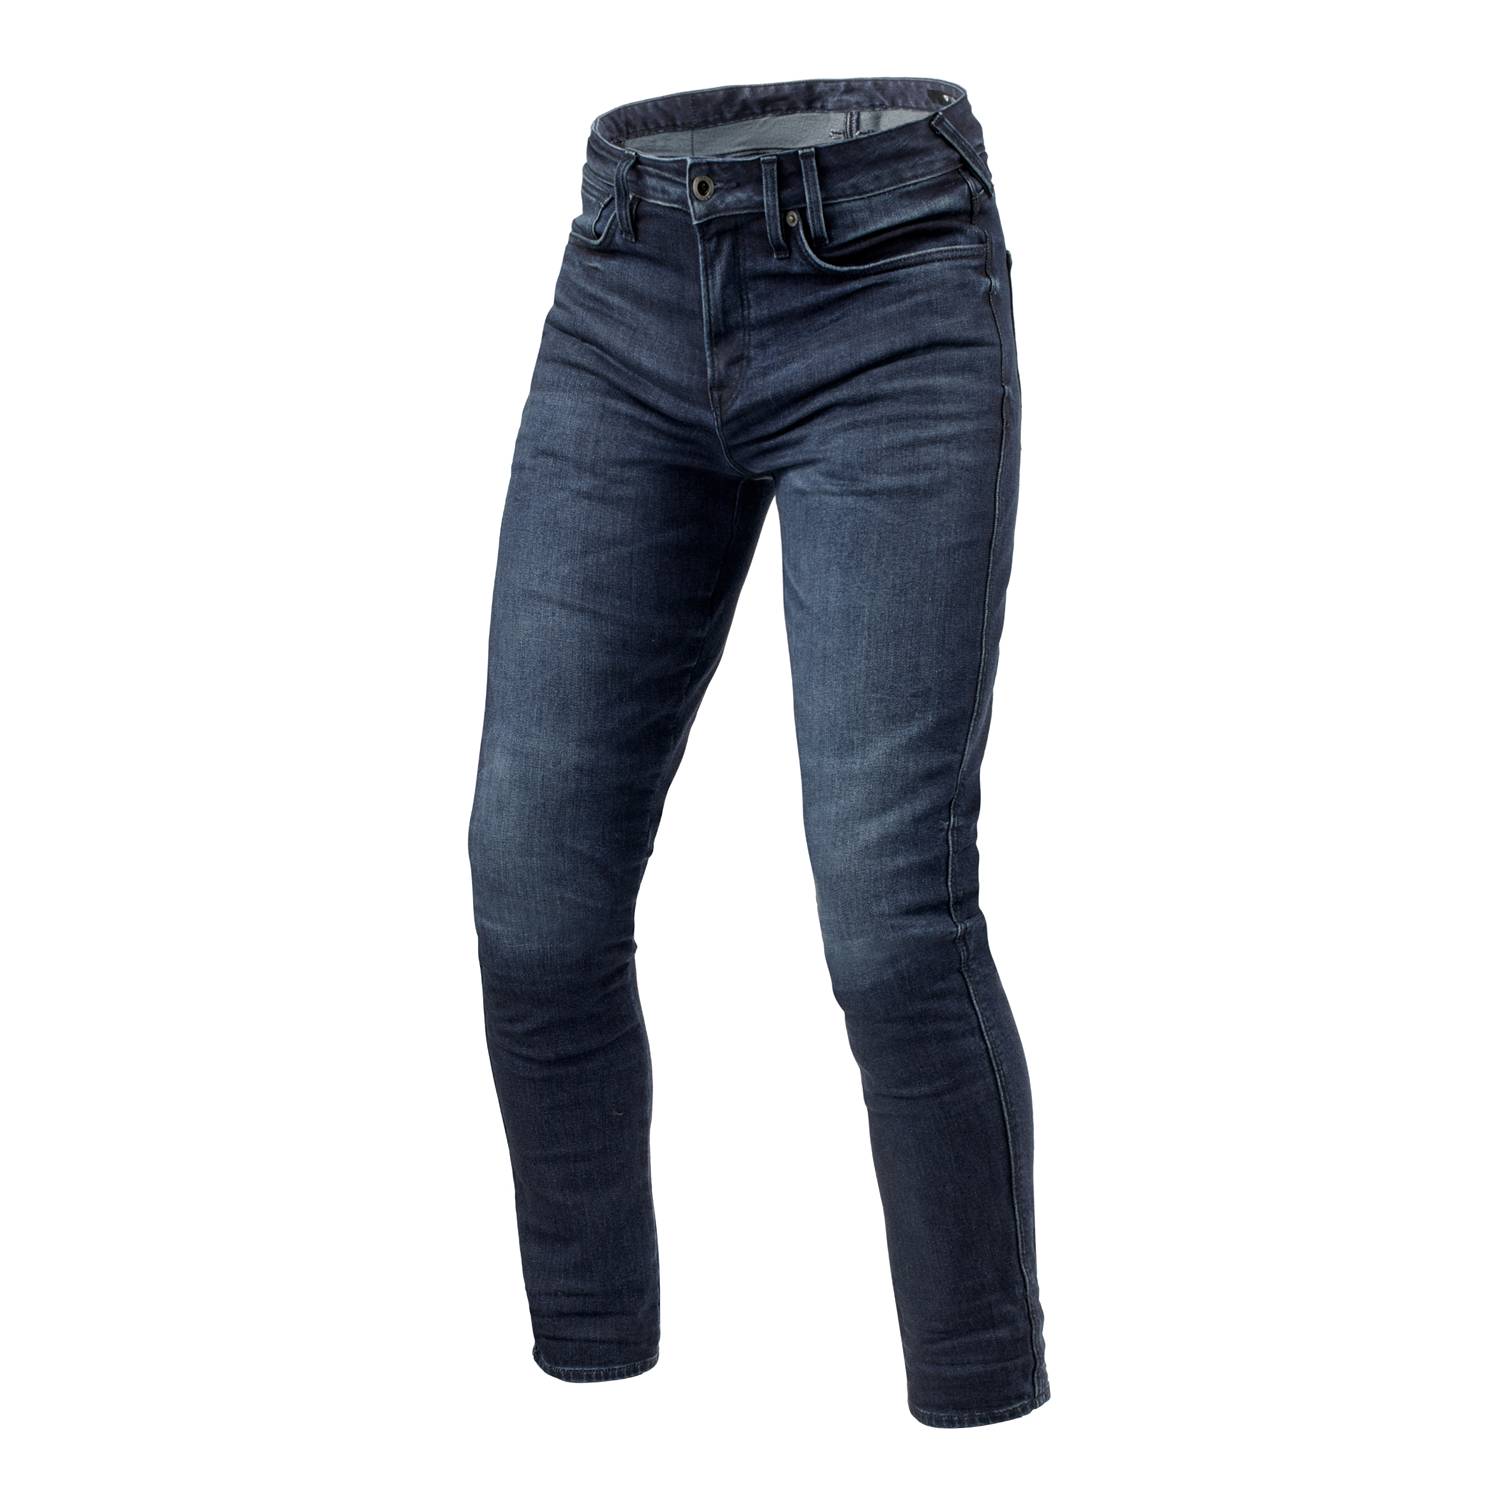 Image of REV'IT! Jeans Carlin SK Dark Blue Used L36 Motorcycle Jeans Size L36/W36 EN